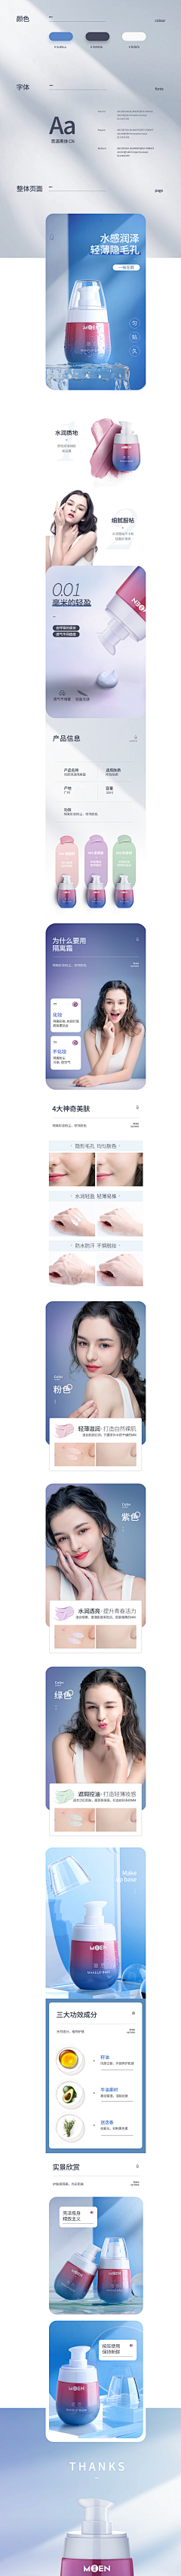 xiaojiahao采集到化妆\护肤品-详情页、海报